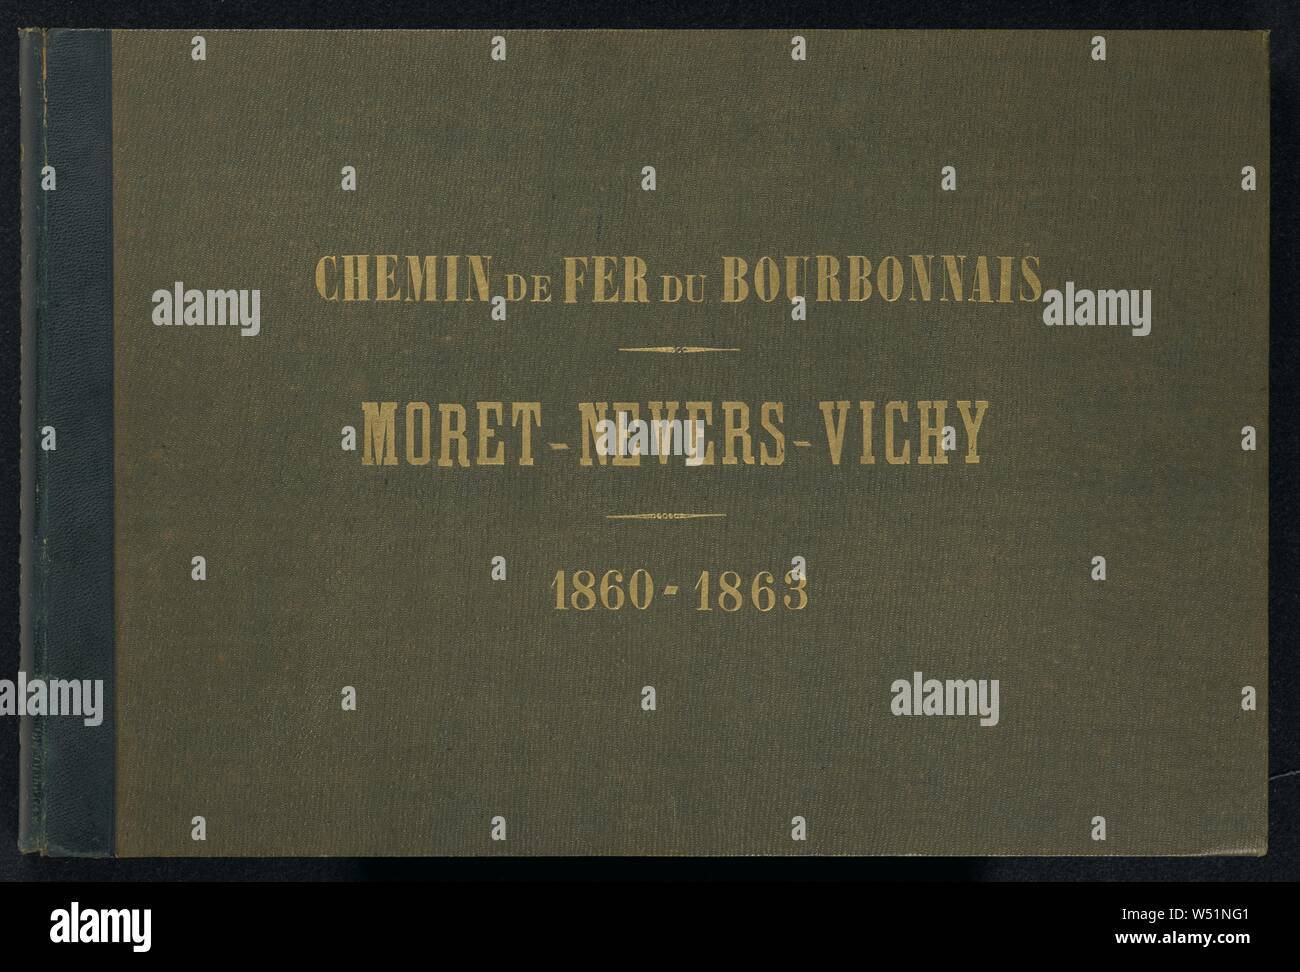 Chemin de Fer du Bourbonnais. Moret-Nevers-Vichy. 1860 - 1863. (cover title), Auguste Hippolyte Collard (French, 1812 - 1885/1897), Paris, France, 1860–1863, Albumen silver print Stock Photo